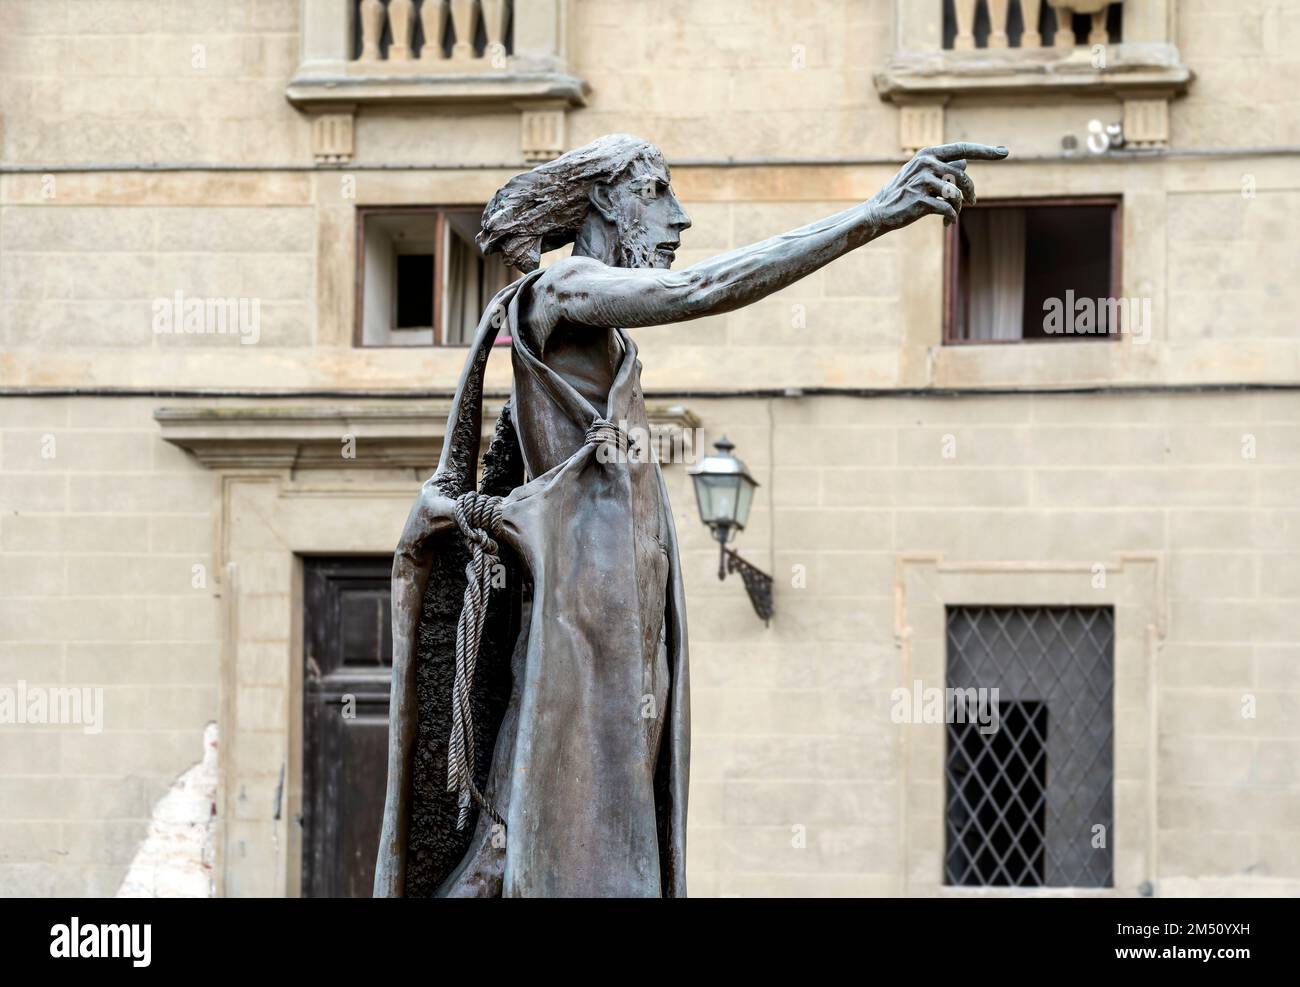 Statue en bronze de Saint Jean-Baptiste réalisée par le sculpteur Giuliano Vangi, quartier Oltrarno, centre-ville de Florence, Toscane, Italie Banque D'Images